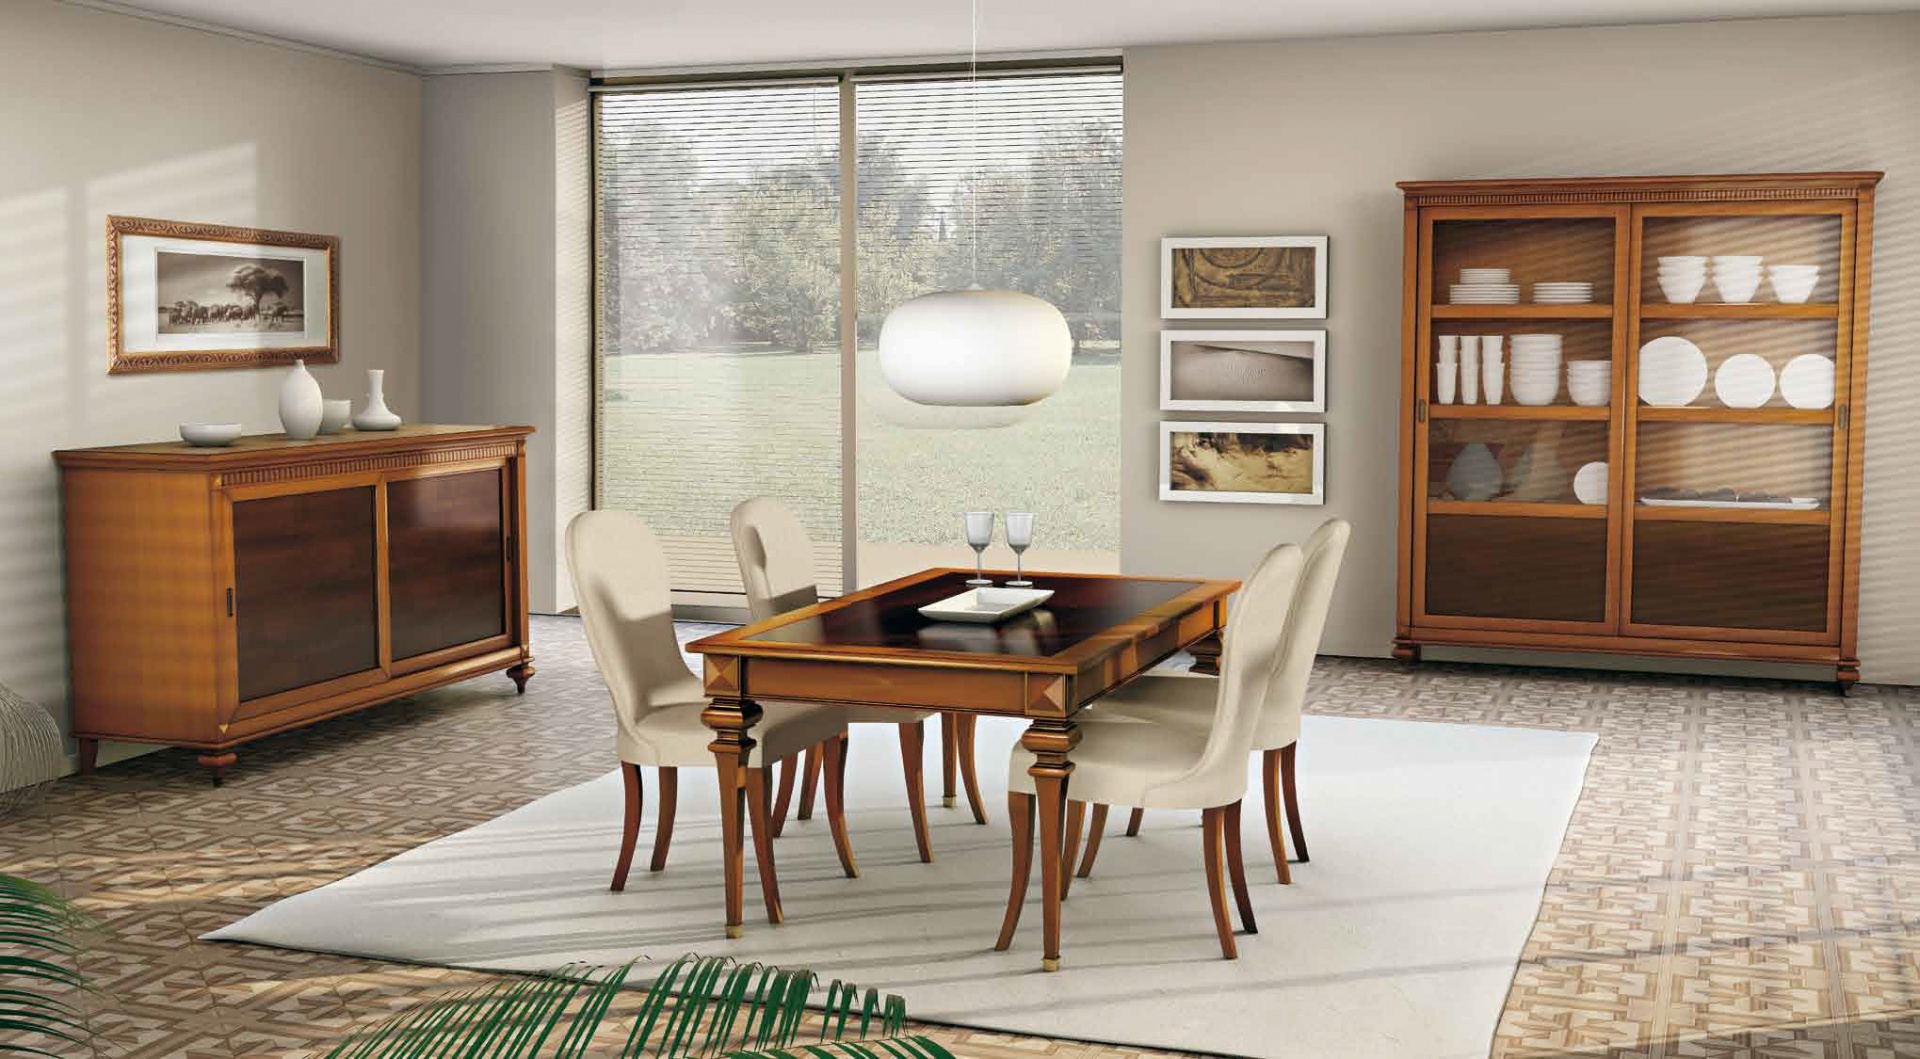 Meble w klasycznym stylu z kolekcji Amarcord marki CP Italian Furniture. Zdobienia wykonane w drewnie nadają wnętrzu wyrafinowany wygląd inspirowany dawnymi, rodzinnymi jadalniami. Fot. CP Italian Furniture.